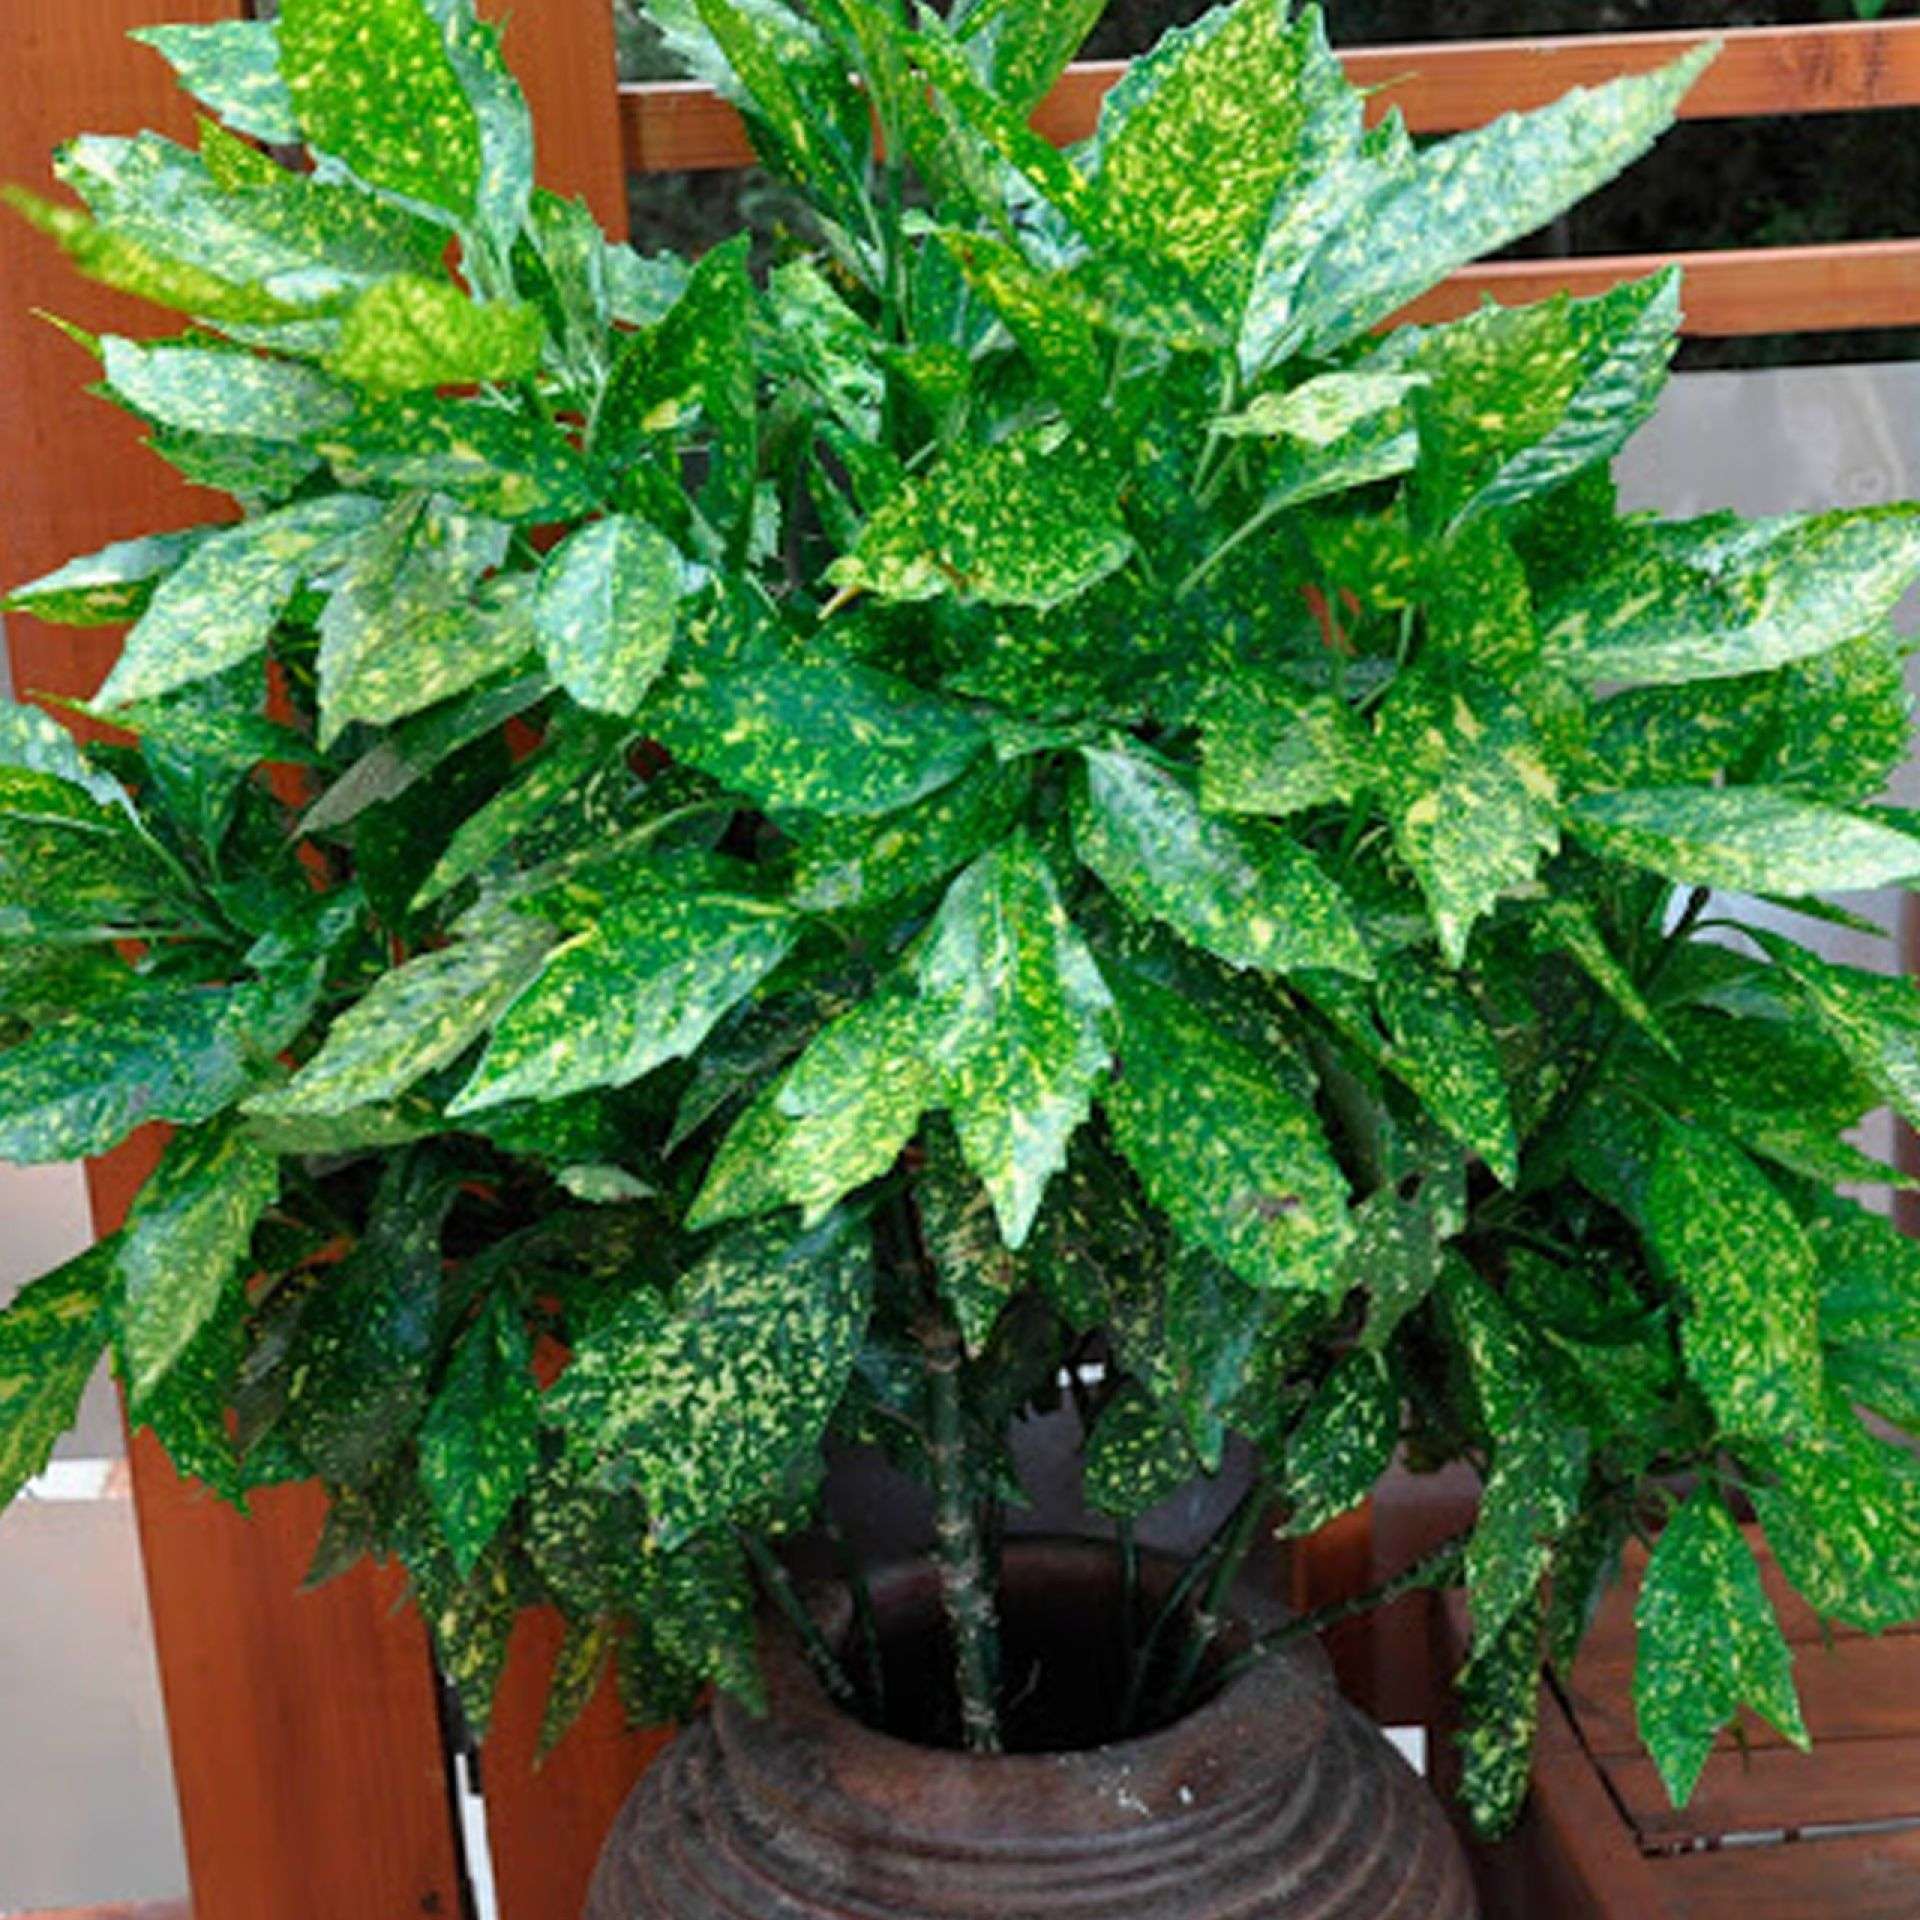 аукуба японская фото взрослого растения